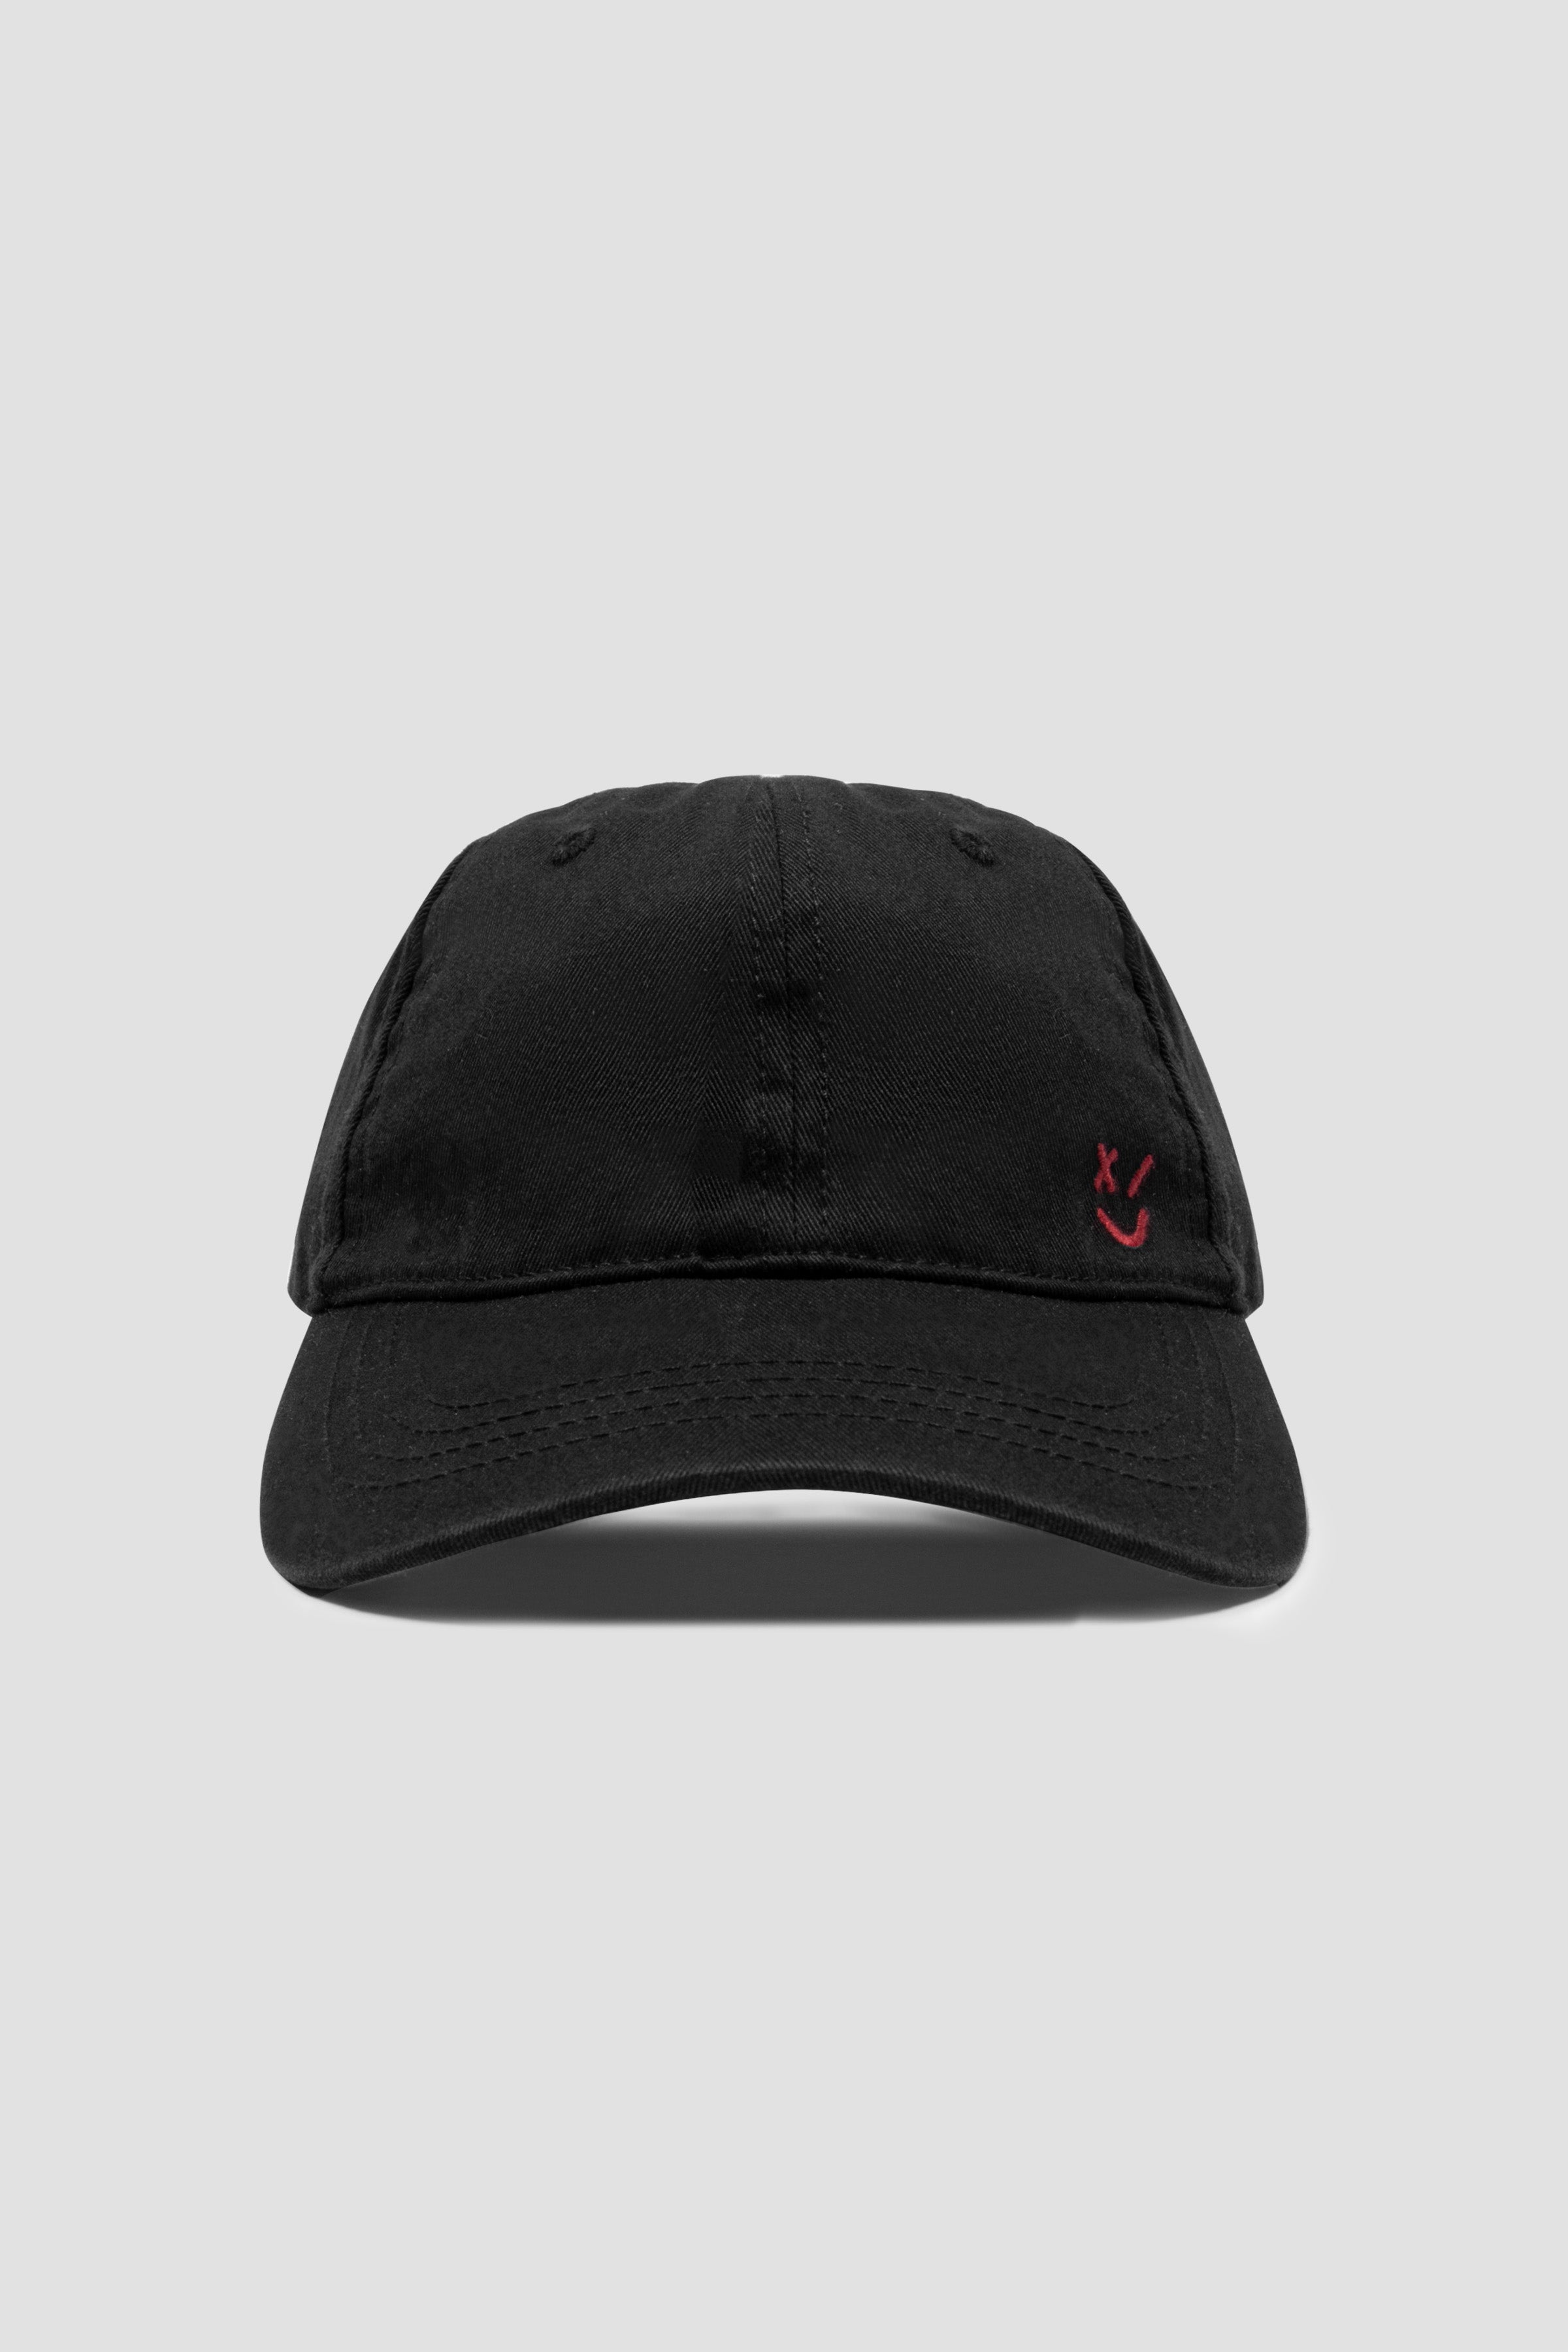 X CAP – US SKINS